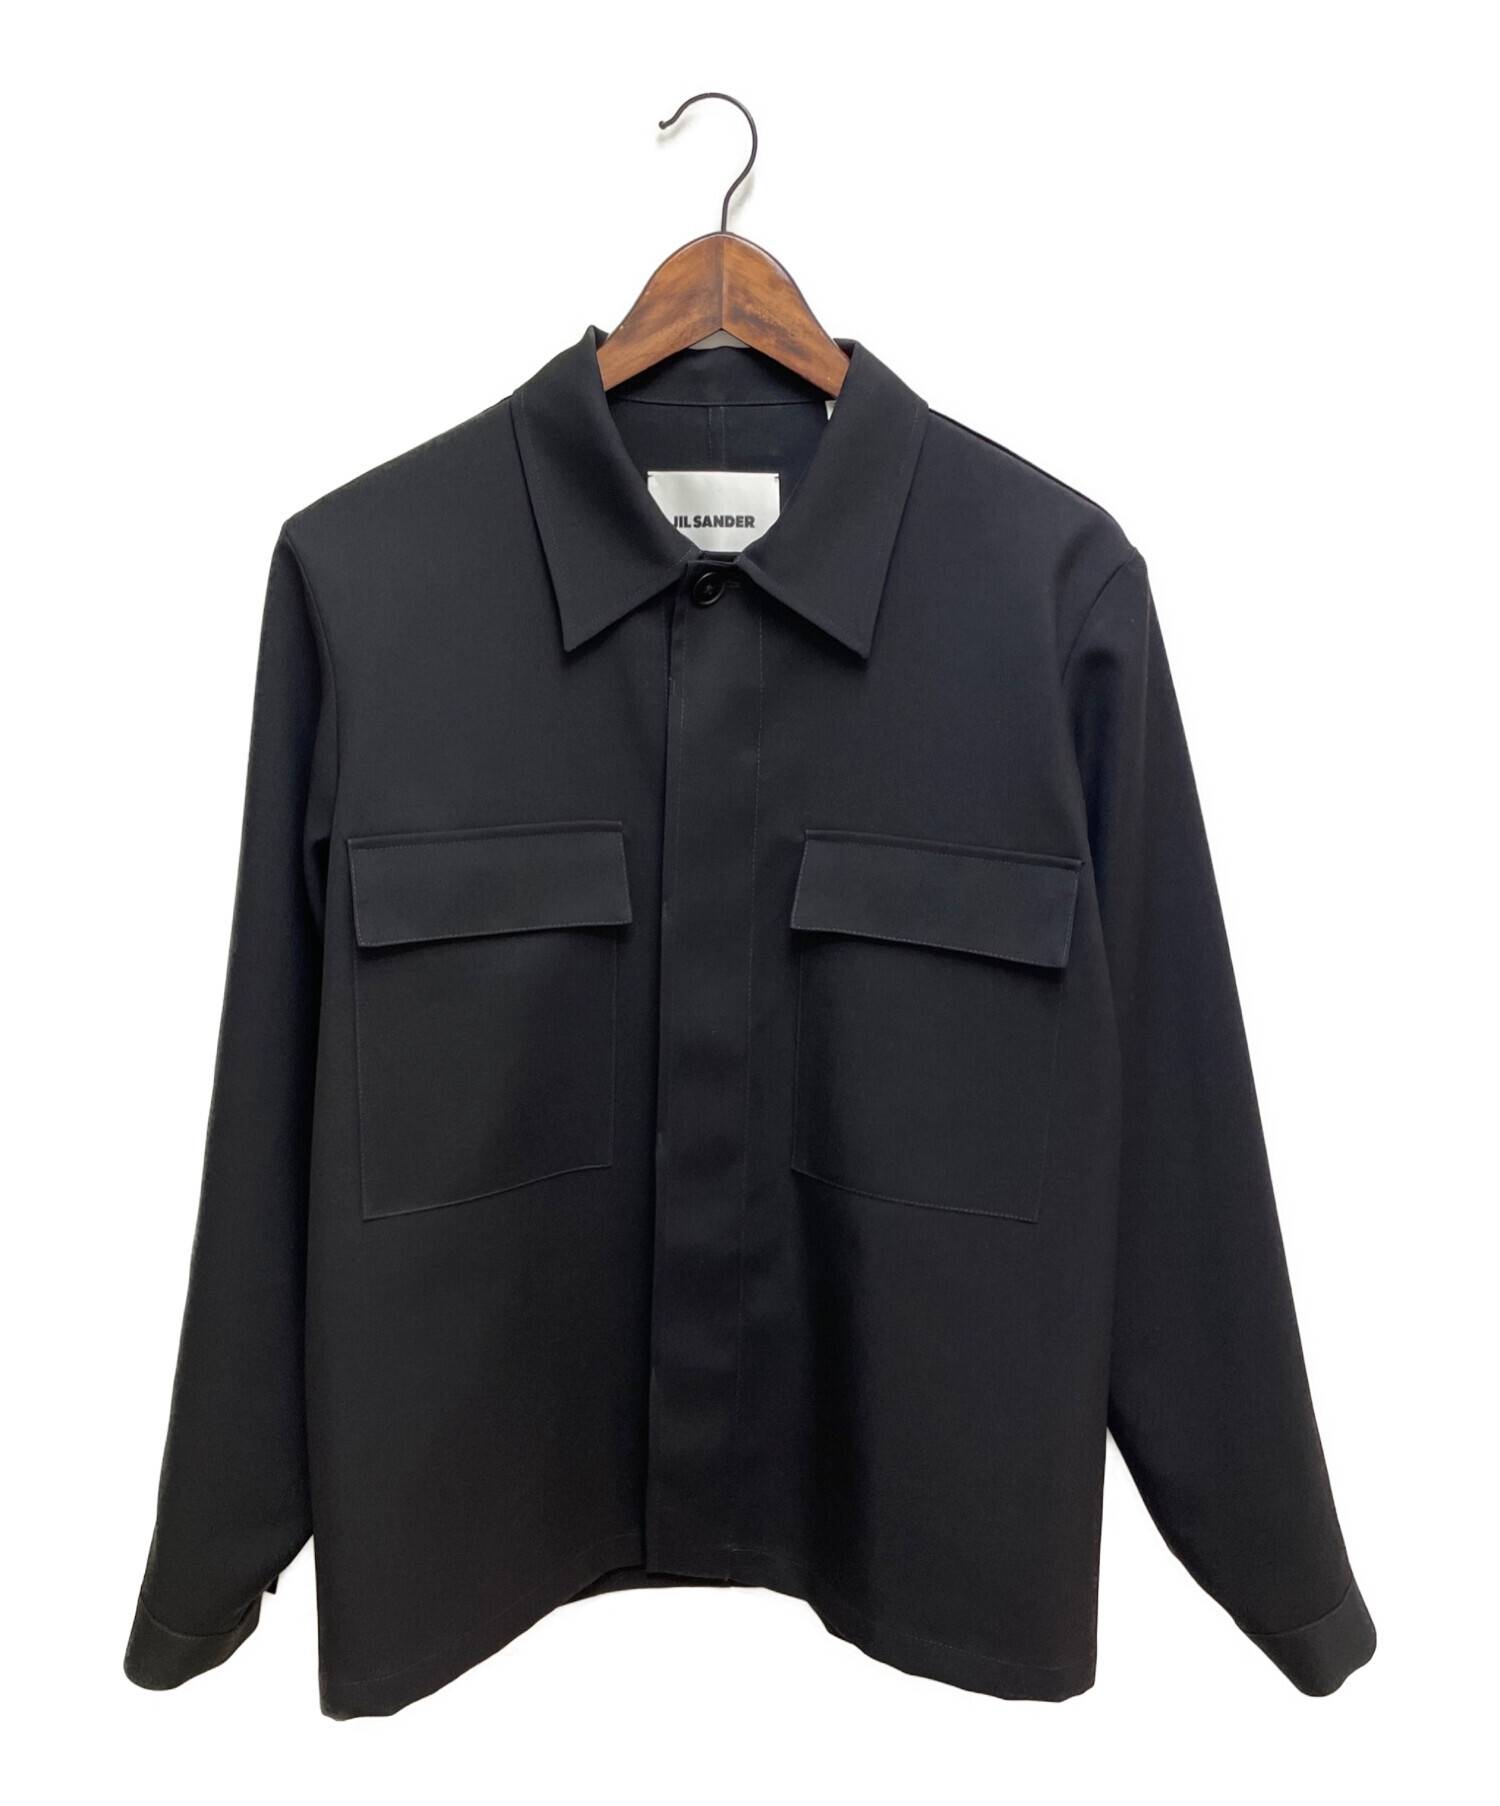 JIL SANDER (ジルサンダー) ウールギャバジンシャツ ブラック サイズ:39